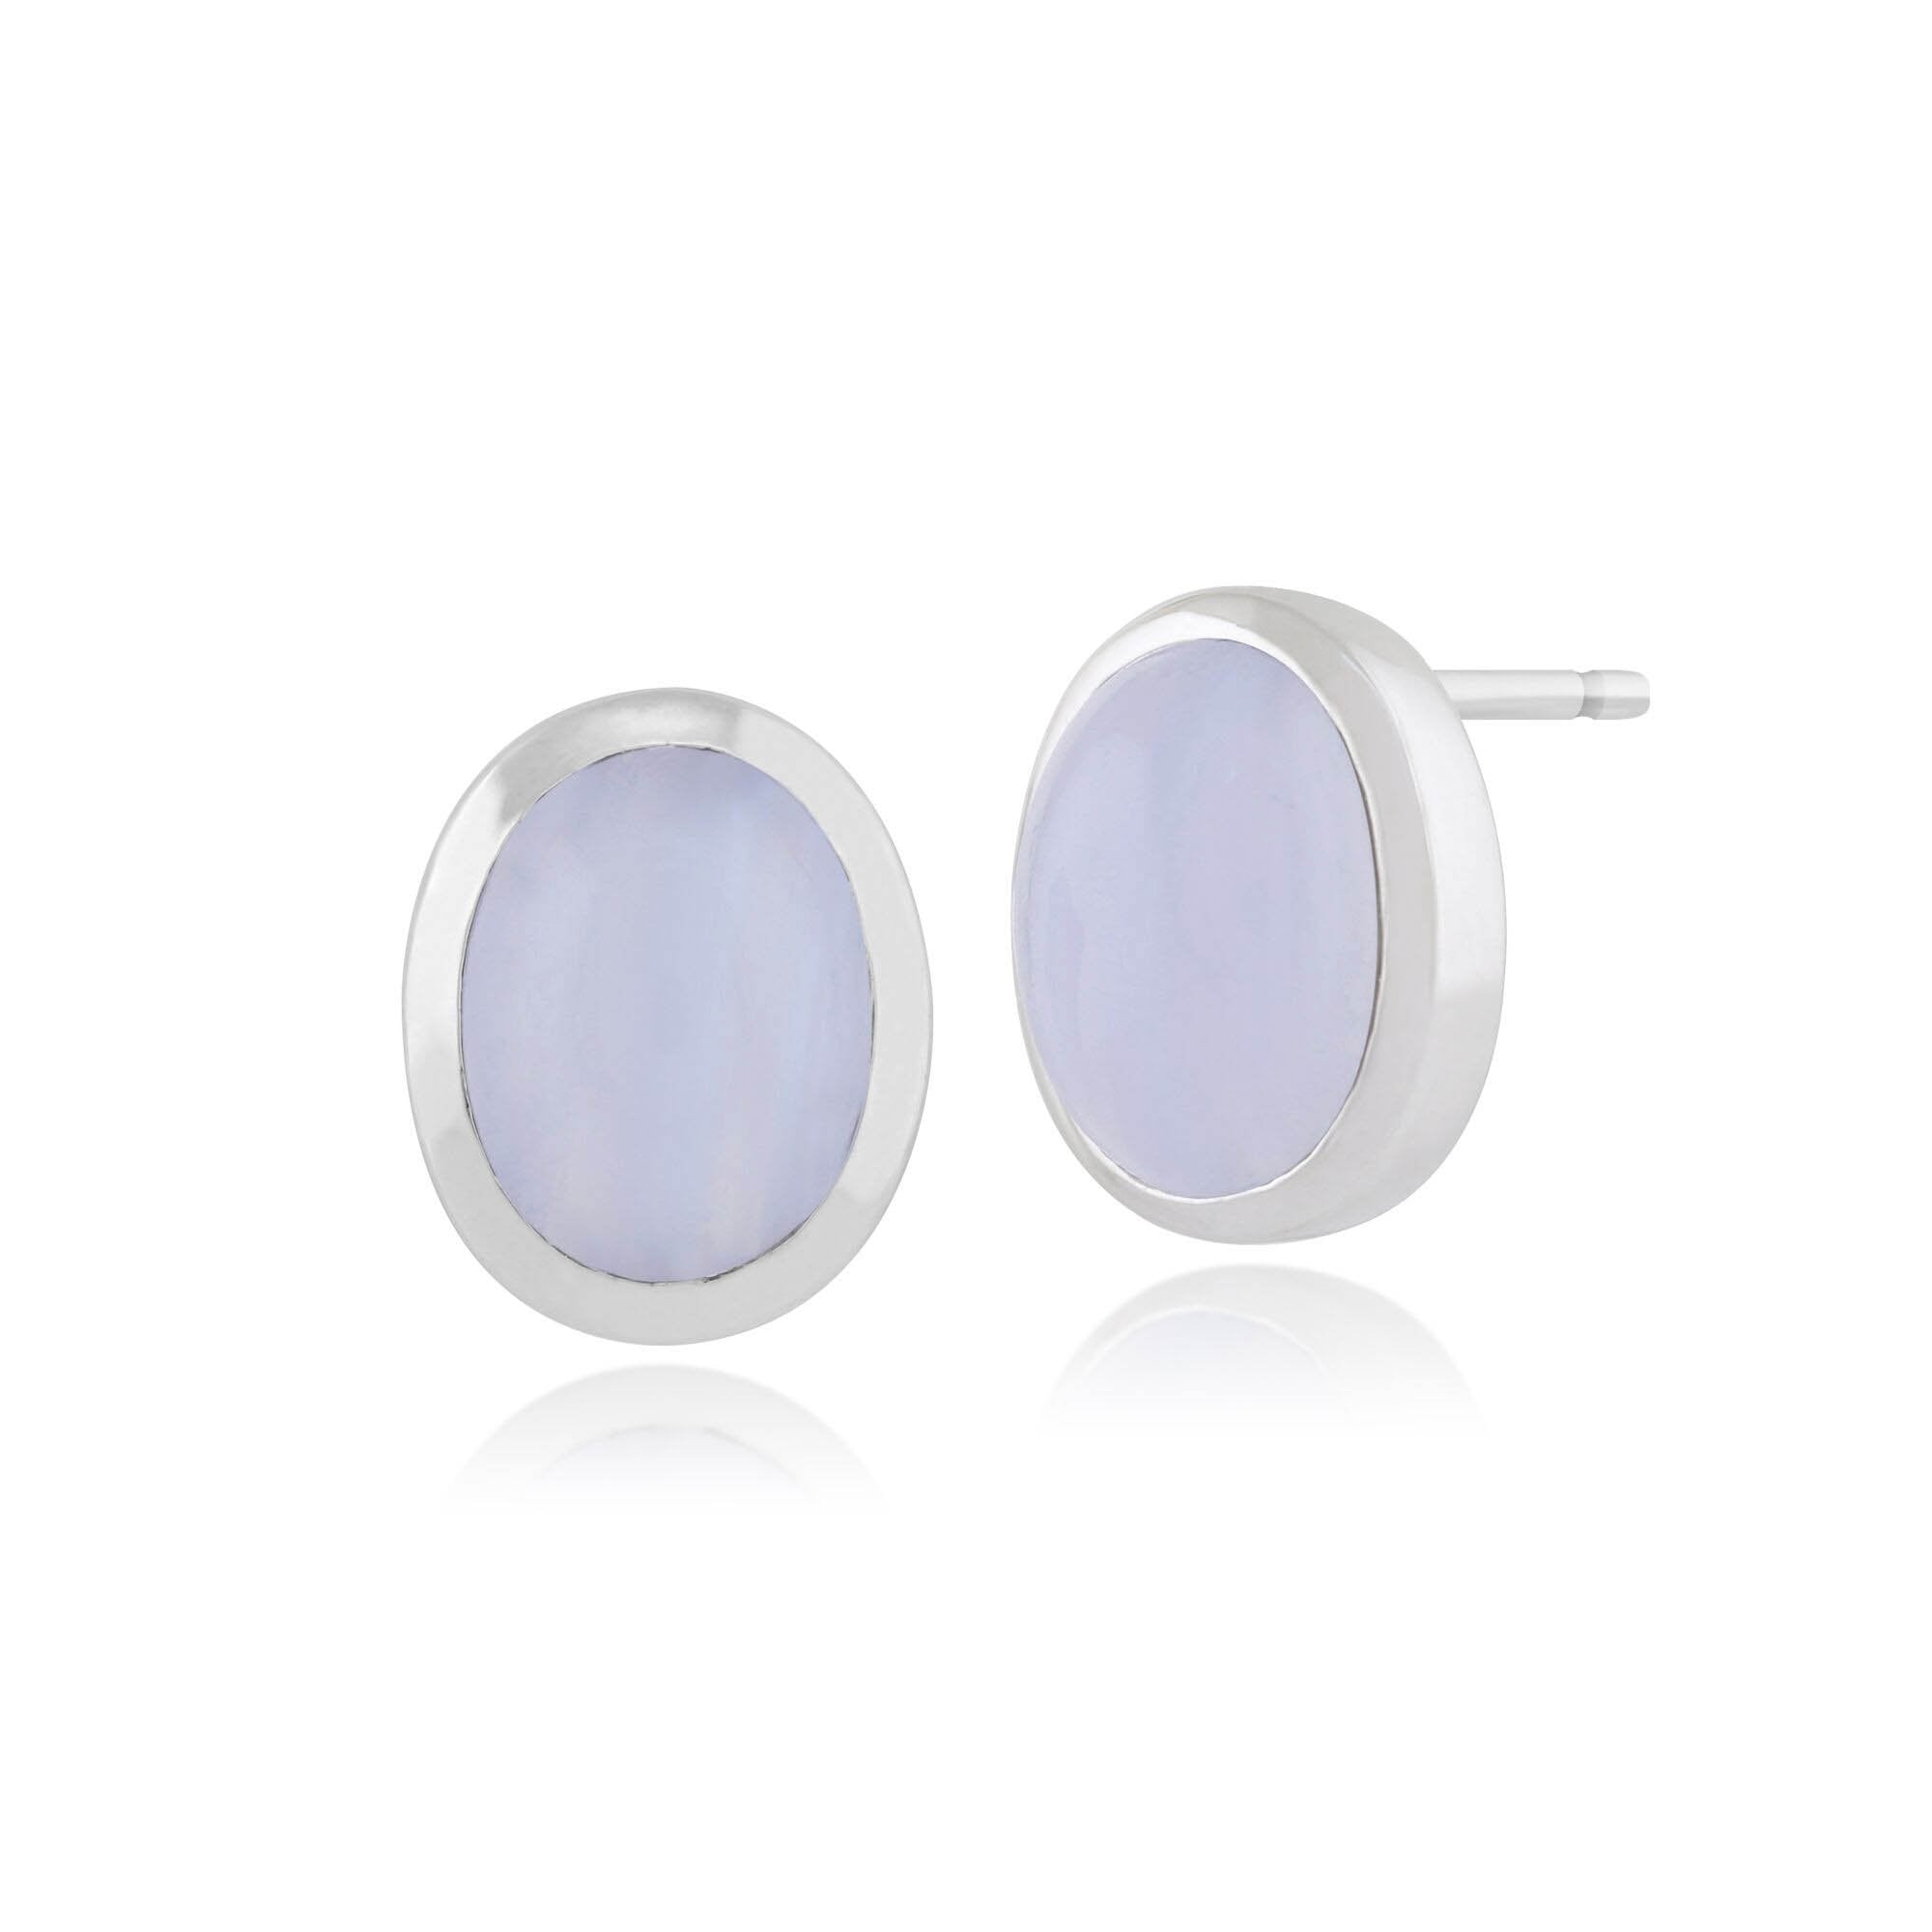 Classic Oval Blue Lace Agate Bezel Set Stud Earrings in 925 Sterling Silver